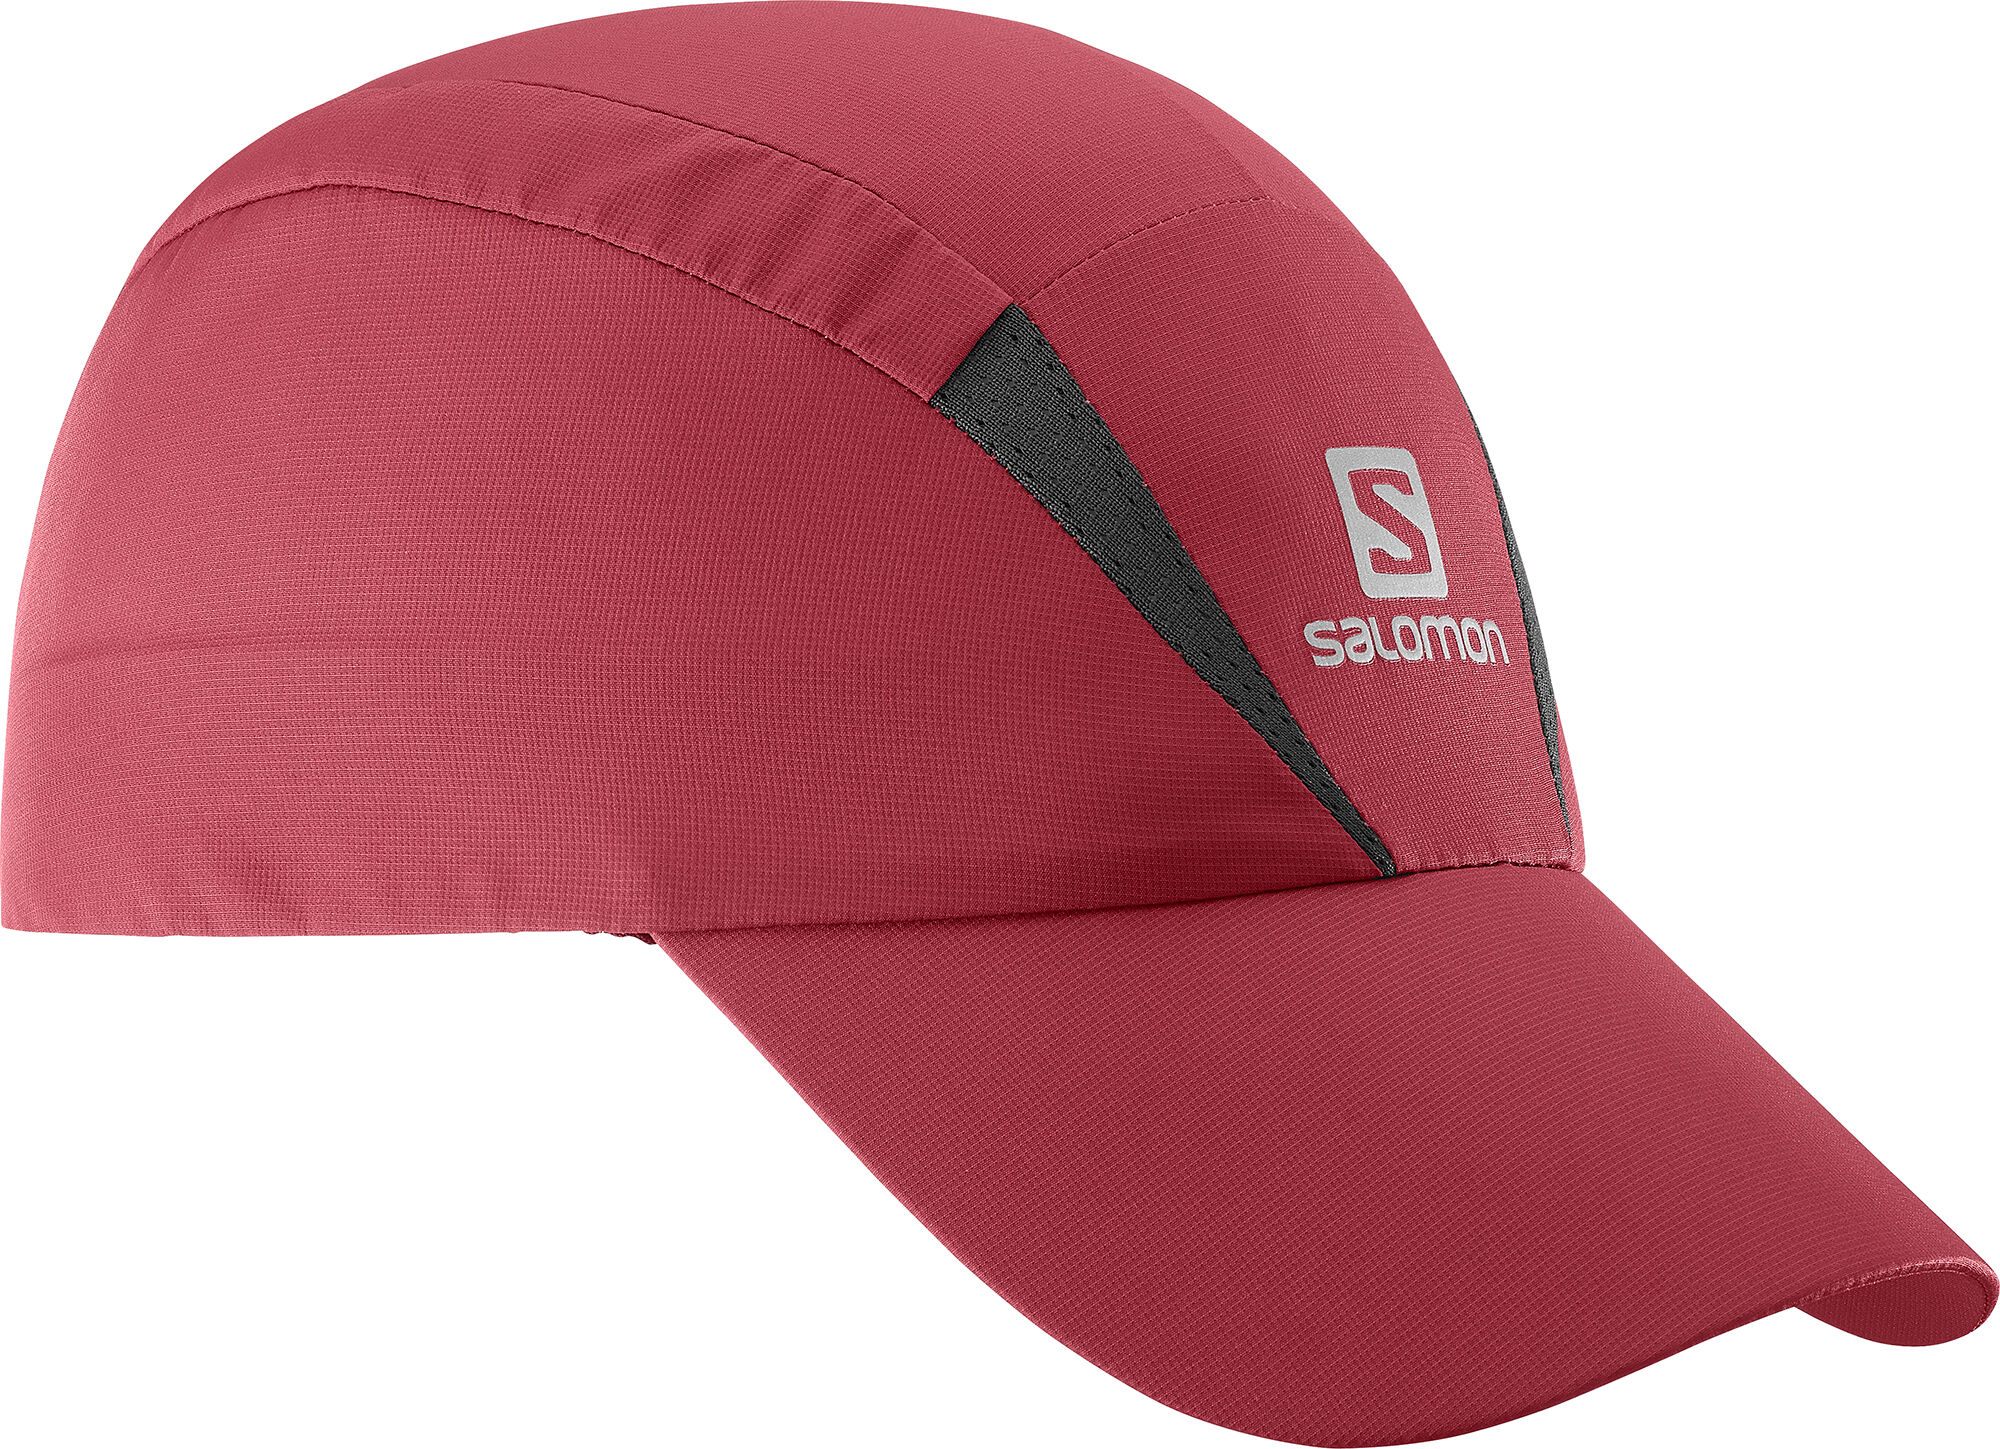 Salomon - XA CAP - Cap